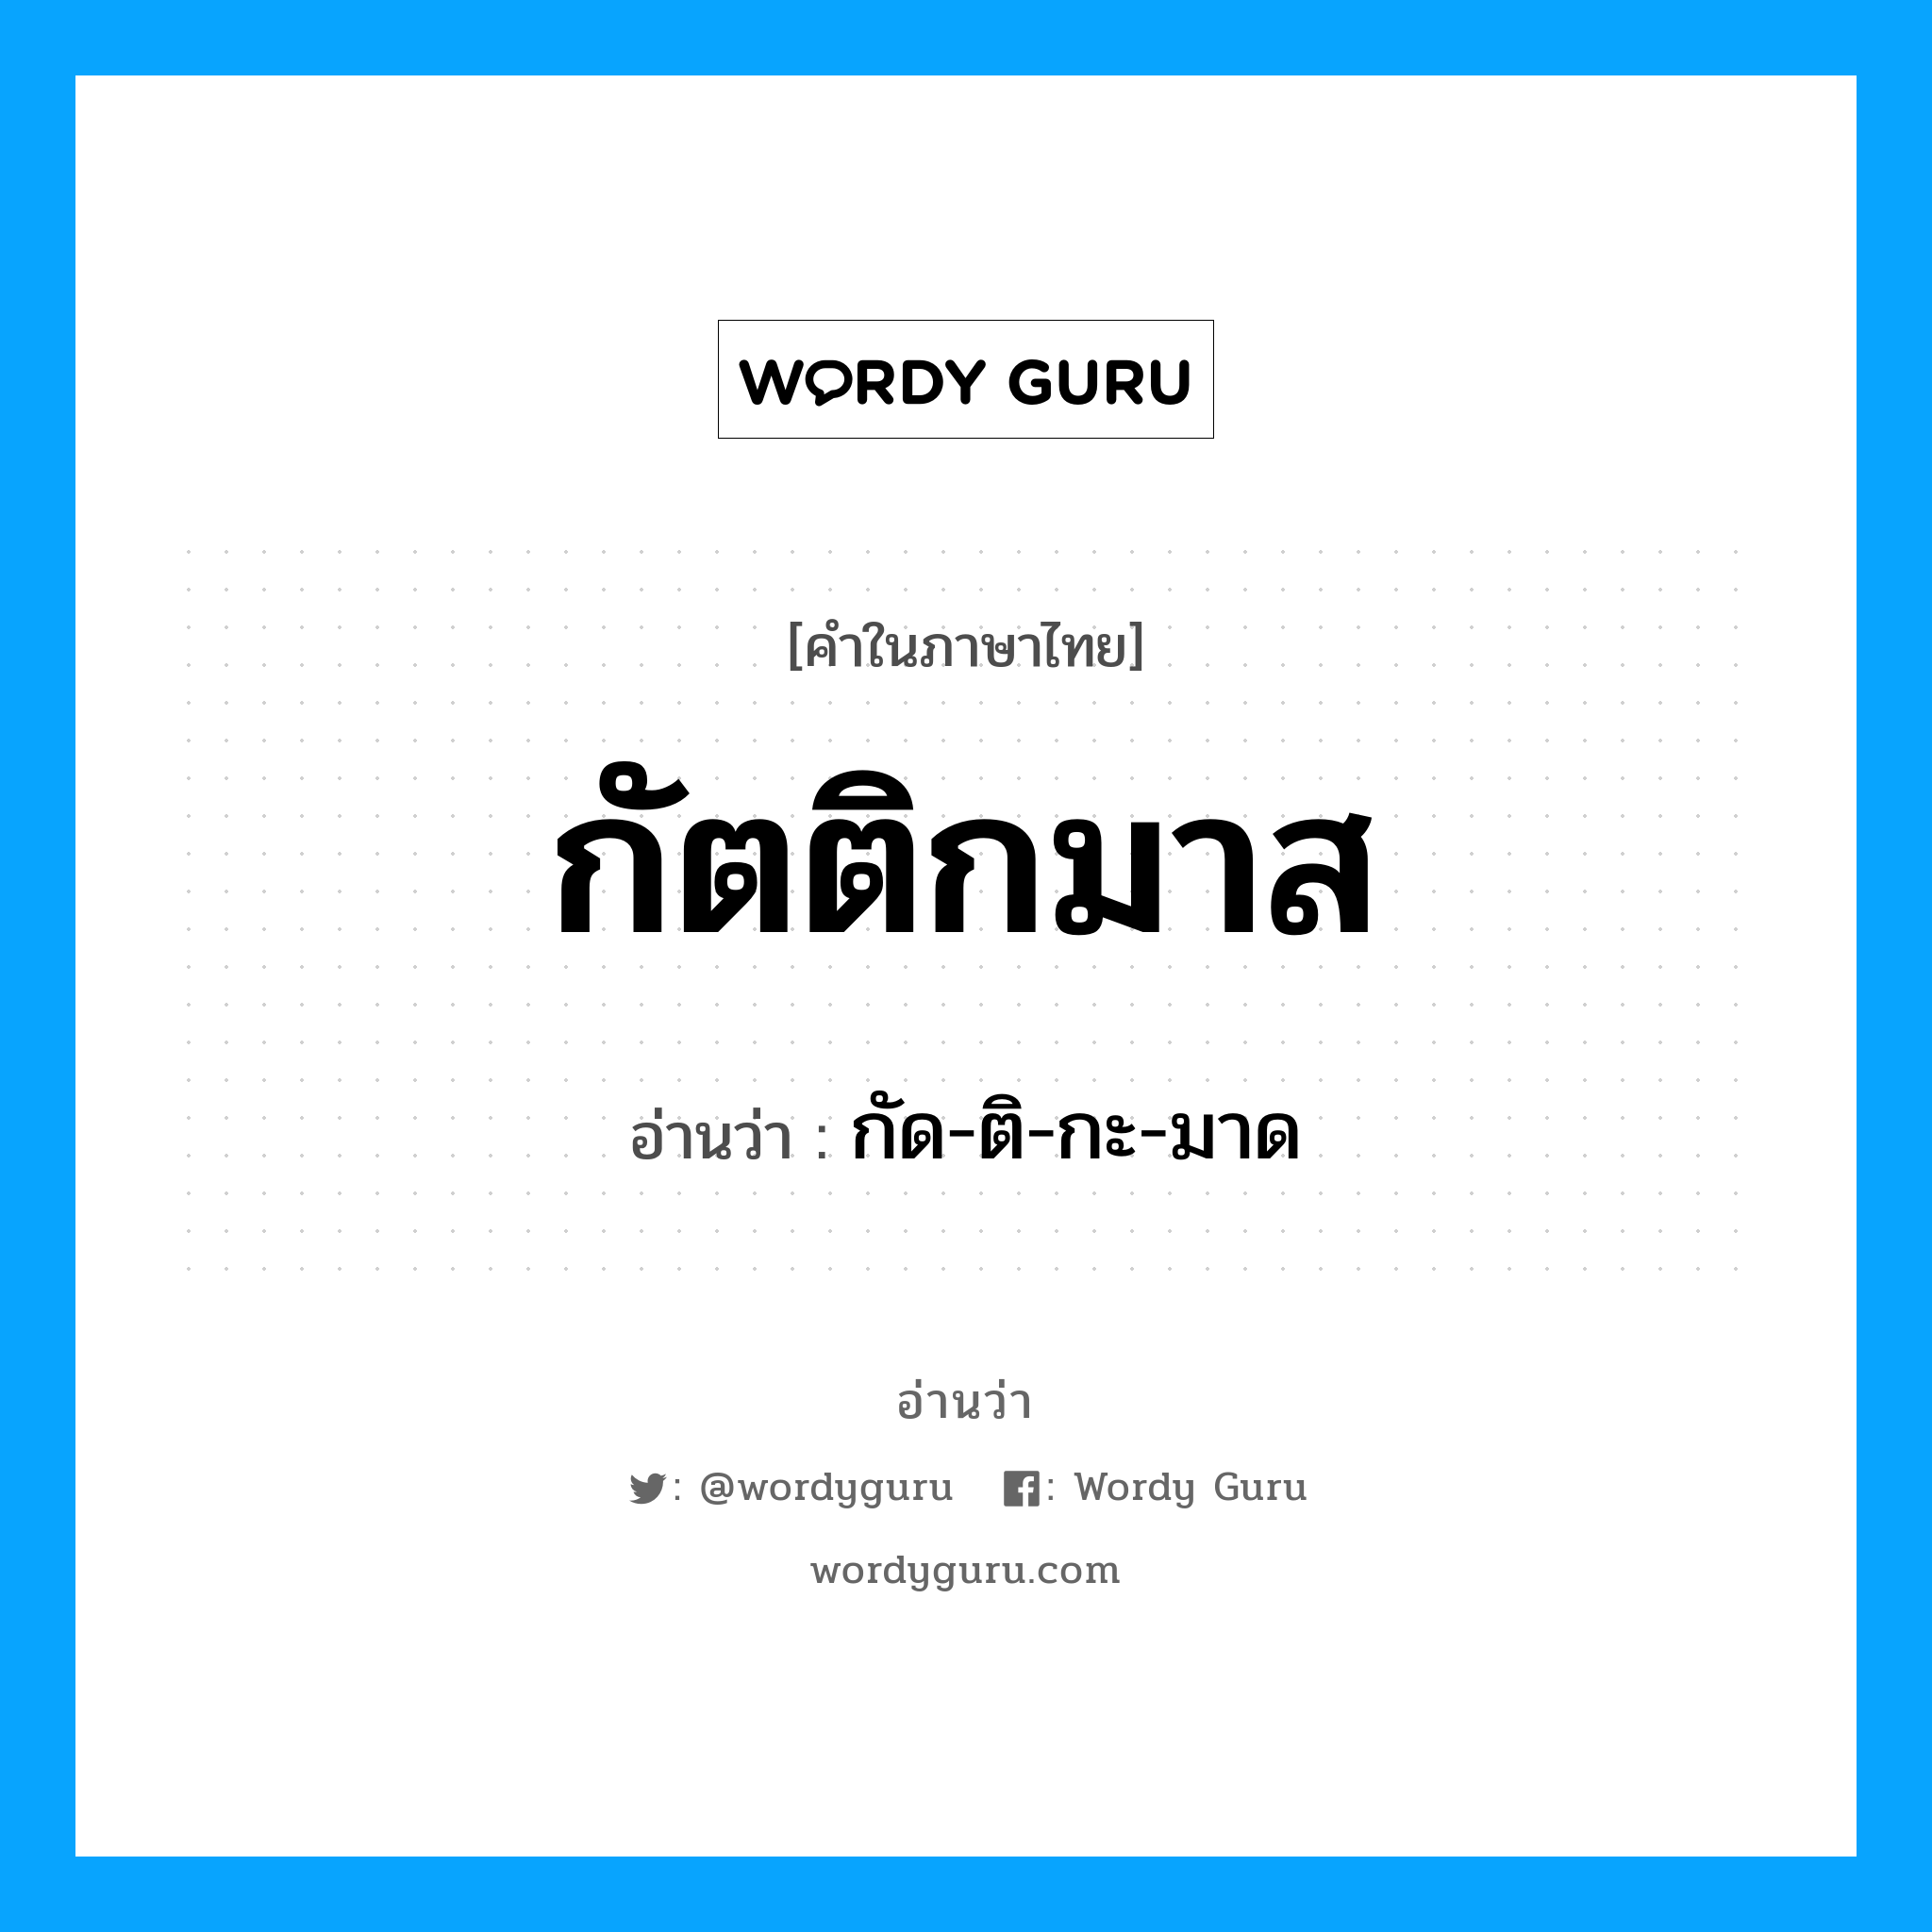 กัด-ติ-กะ-มาด เป็นคำอ่านของคำไหน?, คำในภาษาไทย กัด-ติ-กะ-มาด อ่านว่า กัตติกมาส